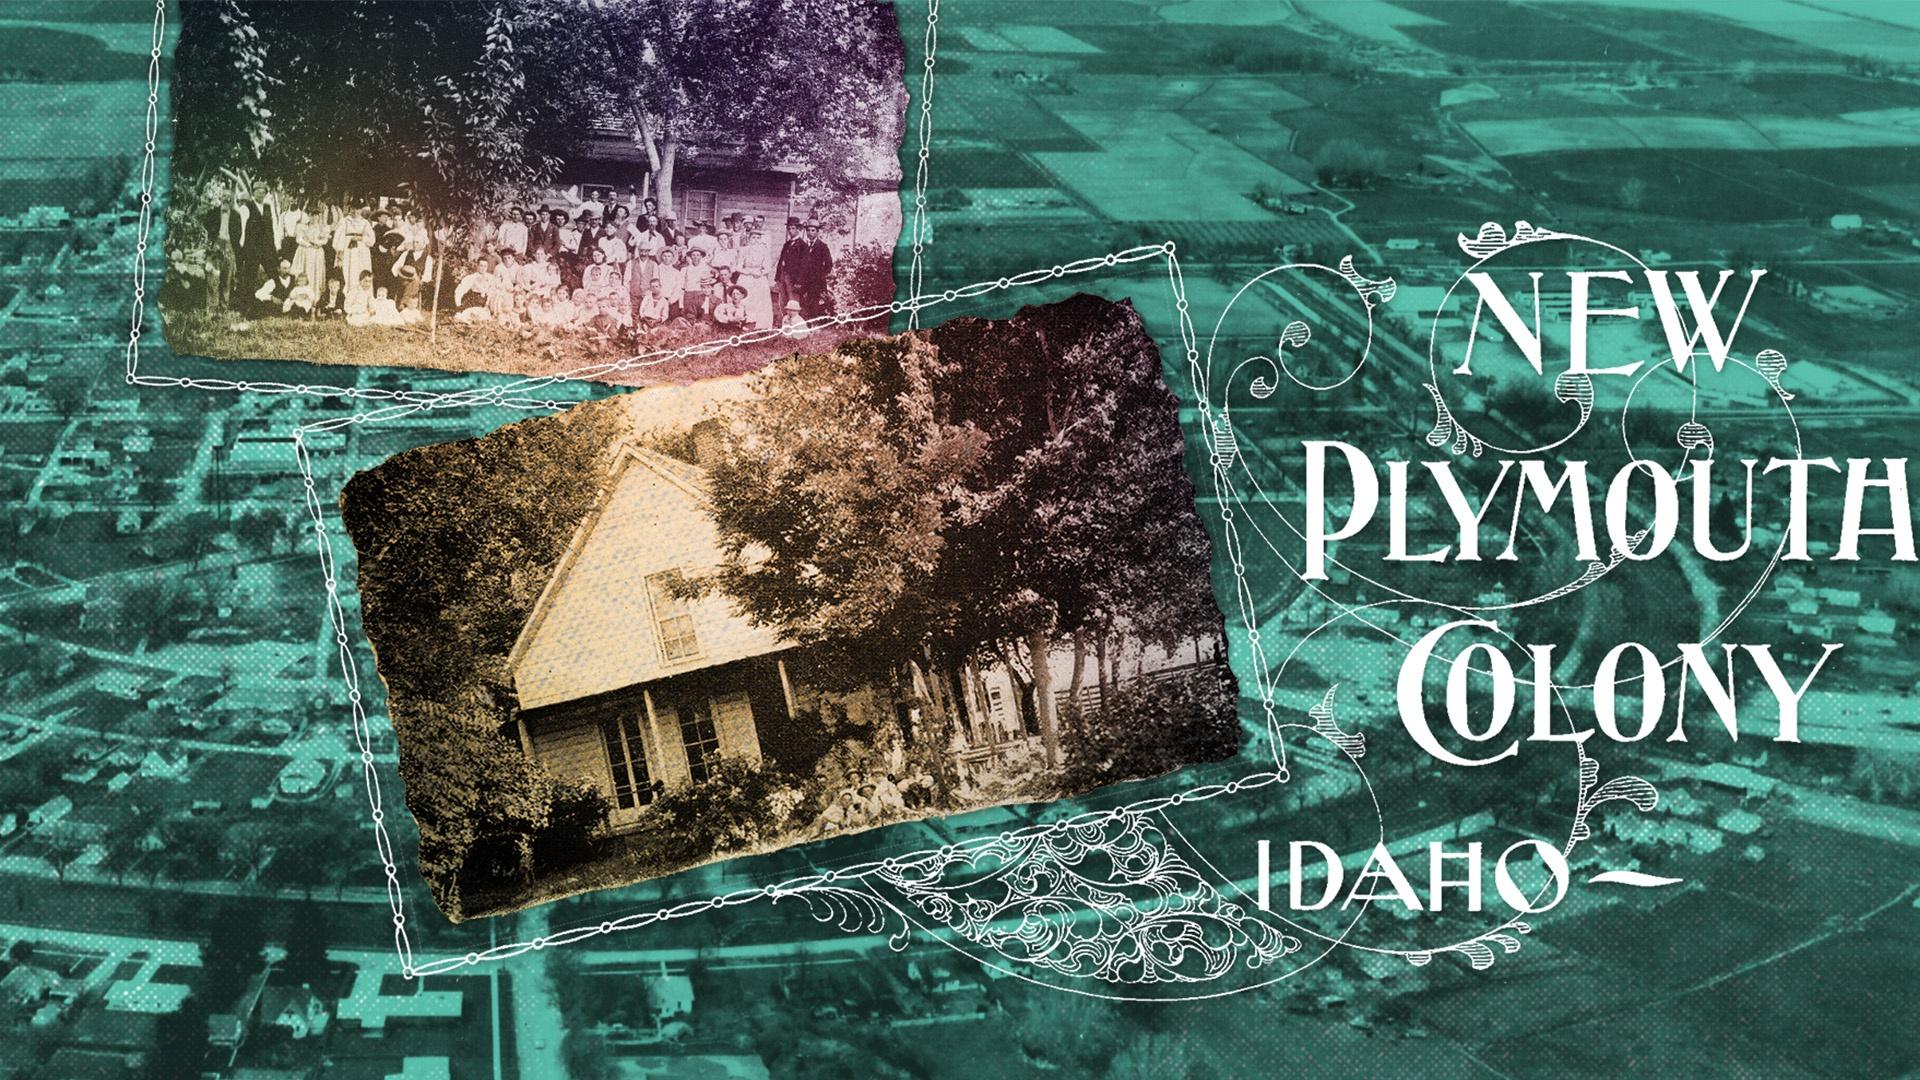 Idaho Experience, Idaho Utopia: The New Plymouth Colony, Season 5, Episode 1